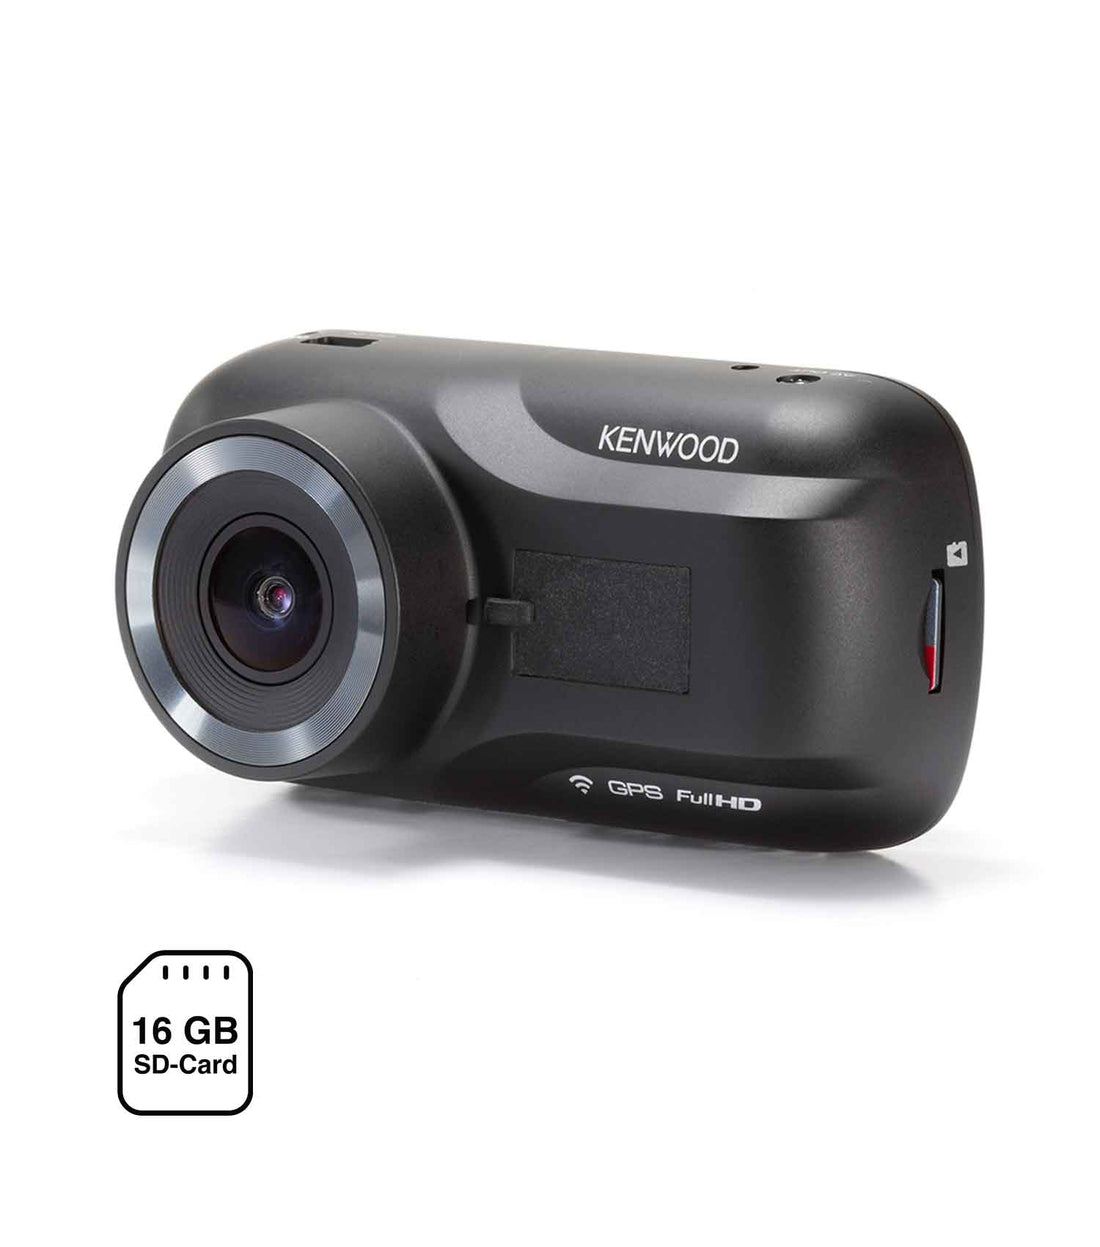 DRV-A301W KENWOOD dash cam with 16GB sd-card